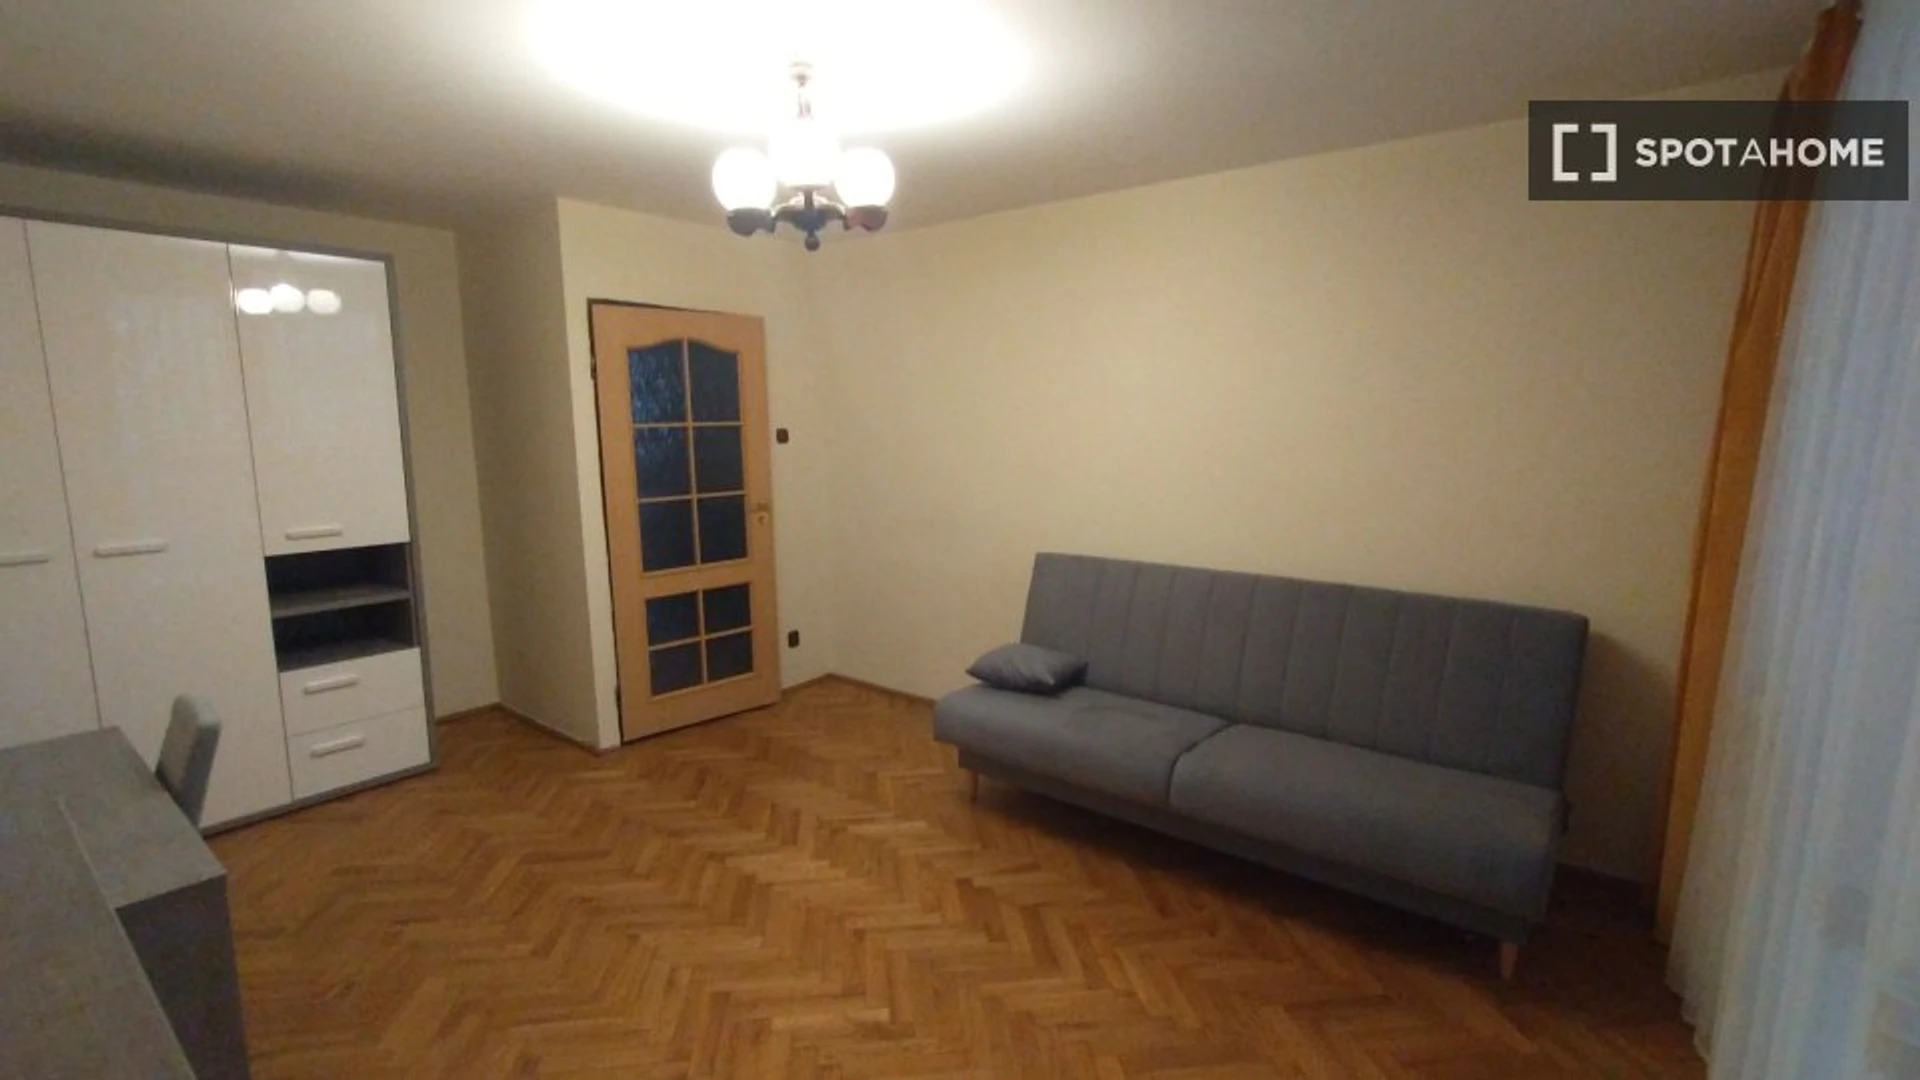 Lublin de çift kişilik yataklı kiralık oda